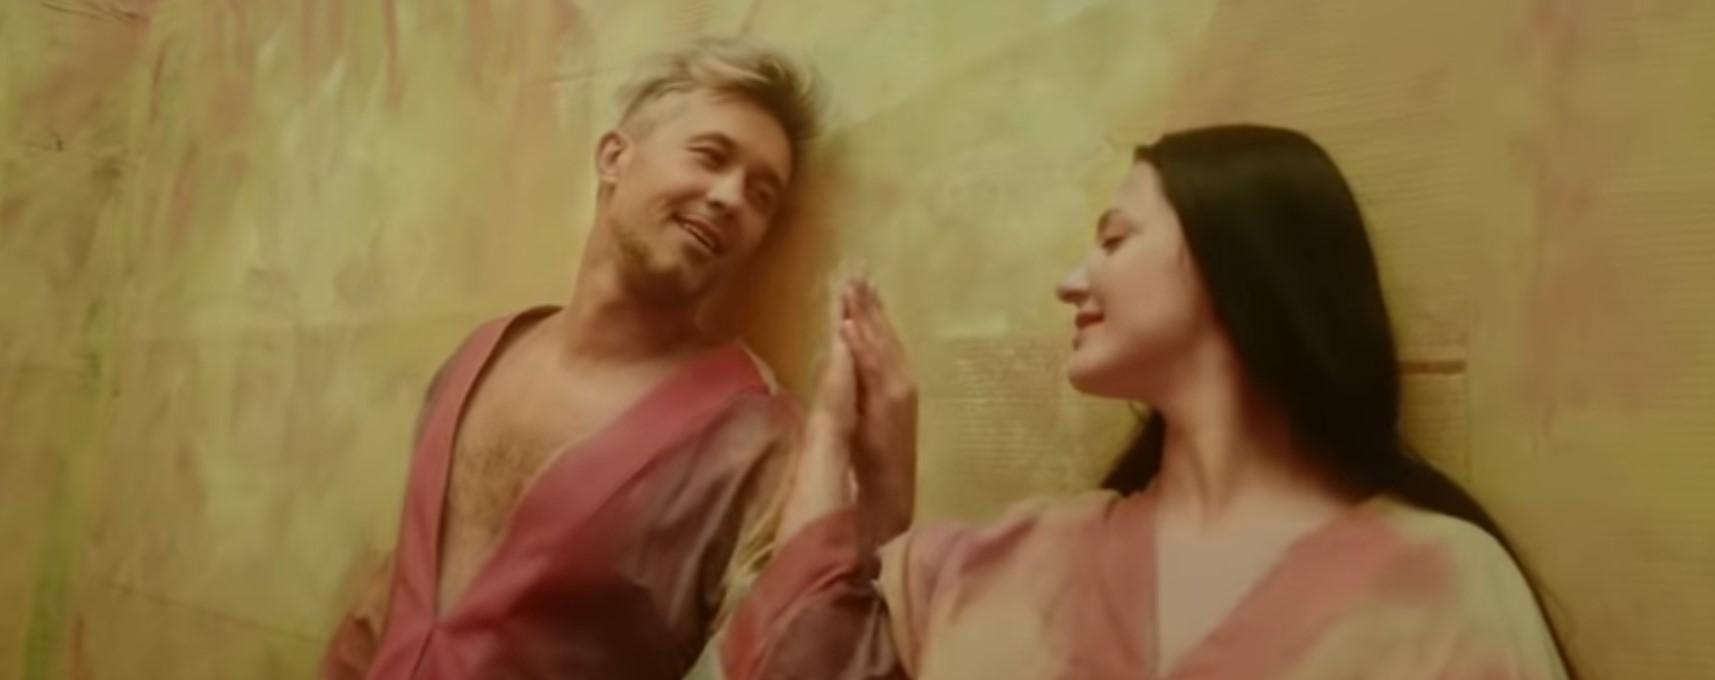 Сергей Бабкин снялся с женой в новом клипе на песню "Єви і Адами": видео